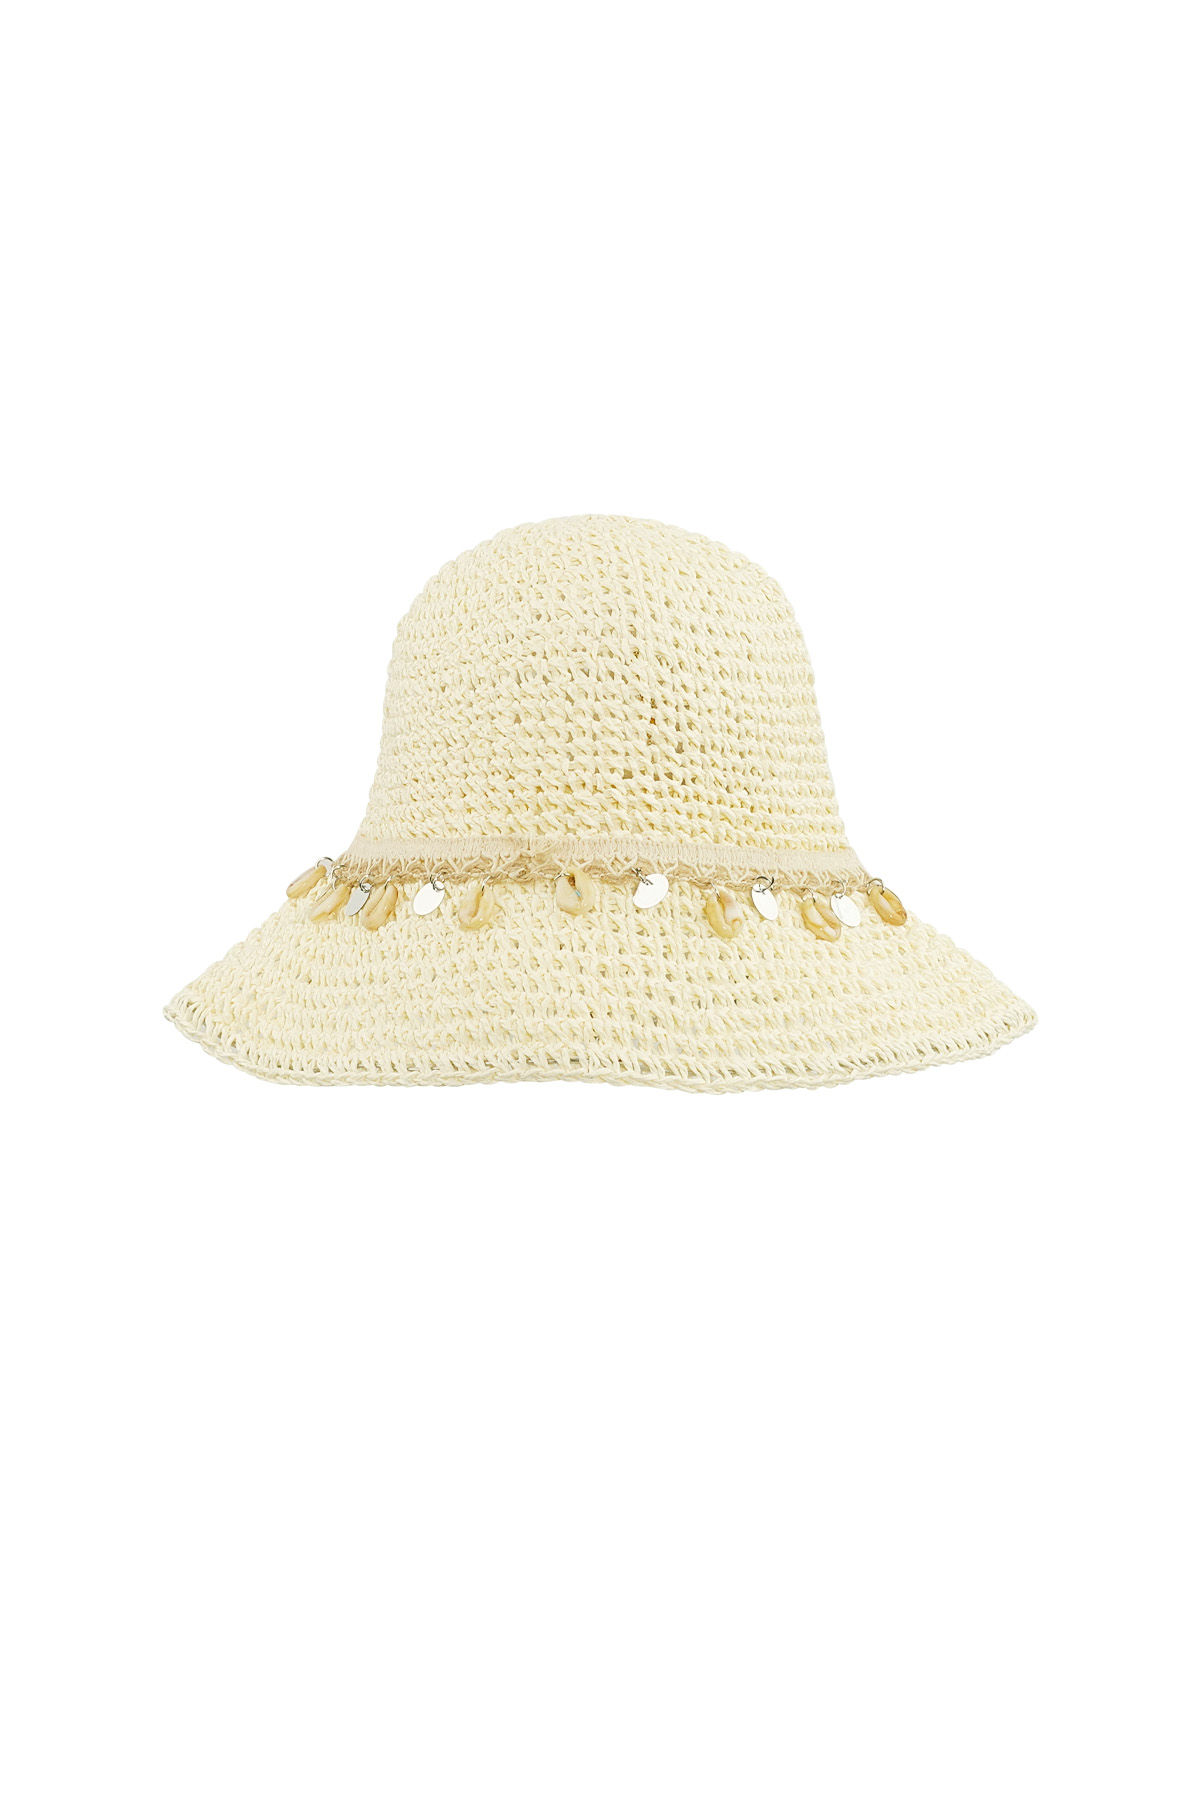 Deniz kabuklu plaj şapkası - kırık beyaz h5 